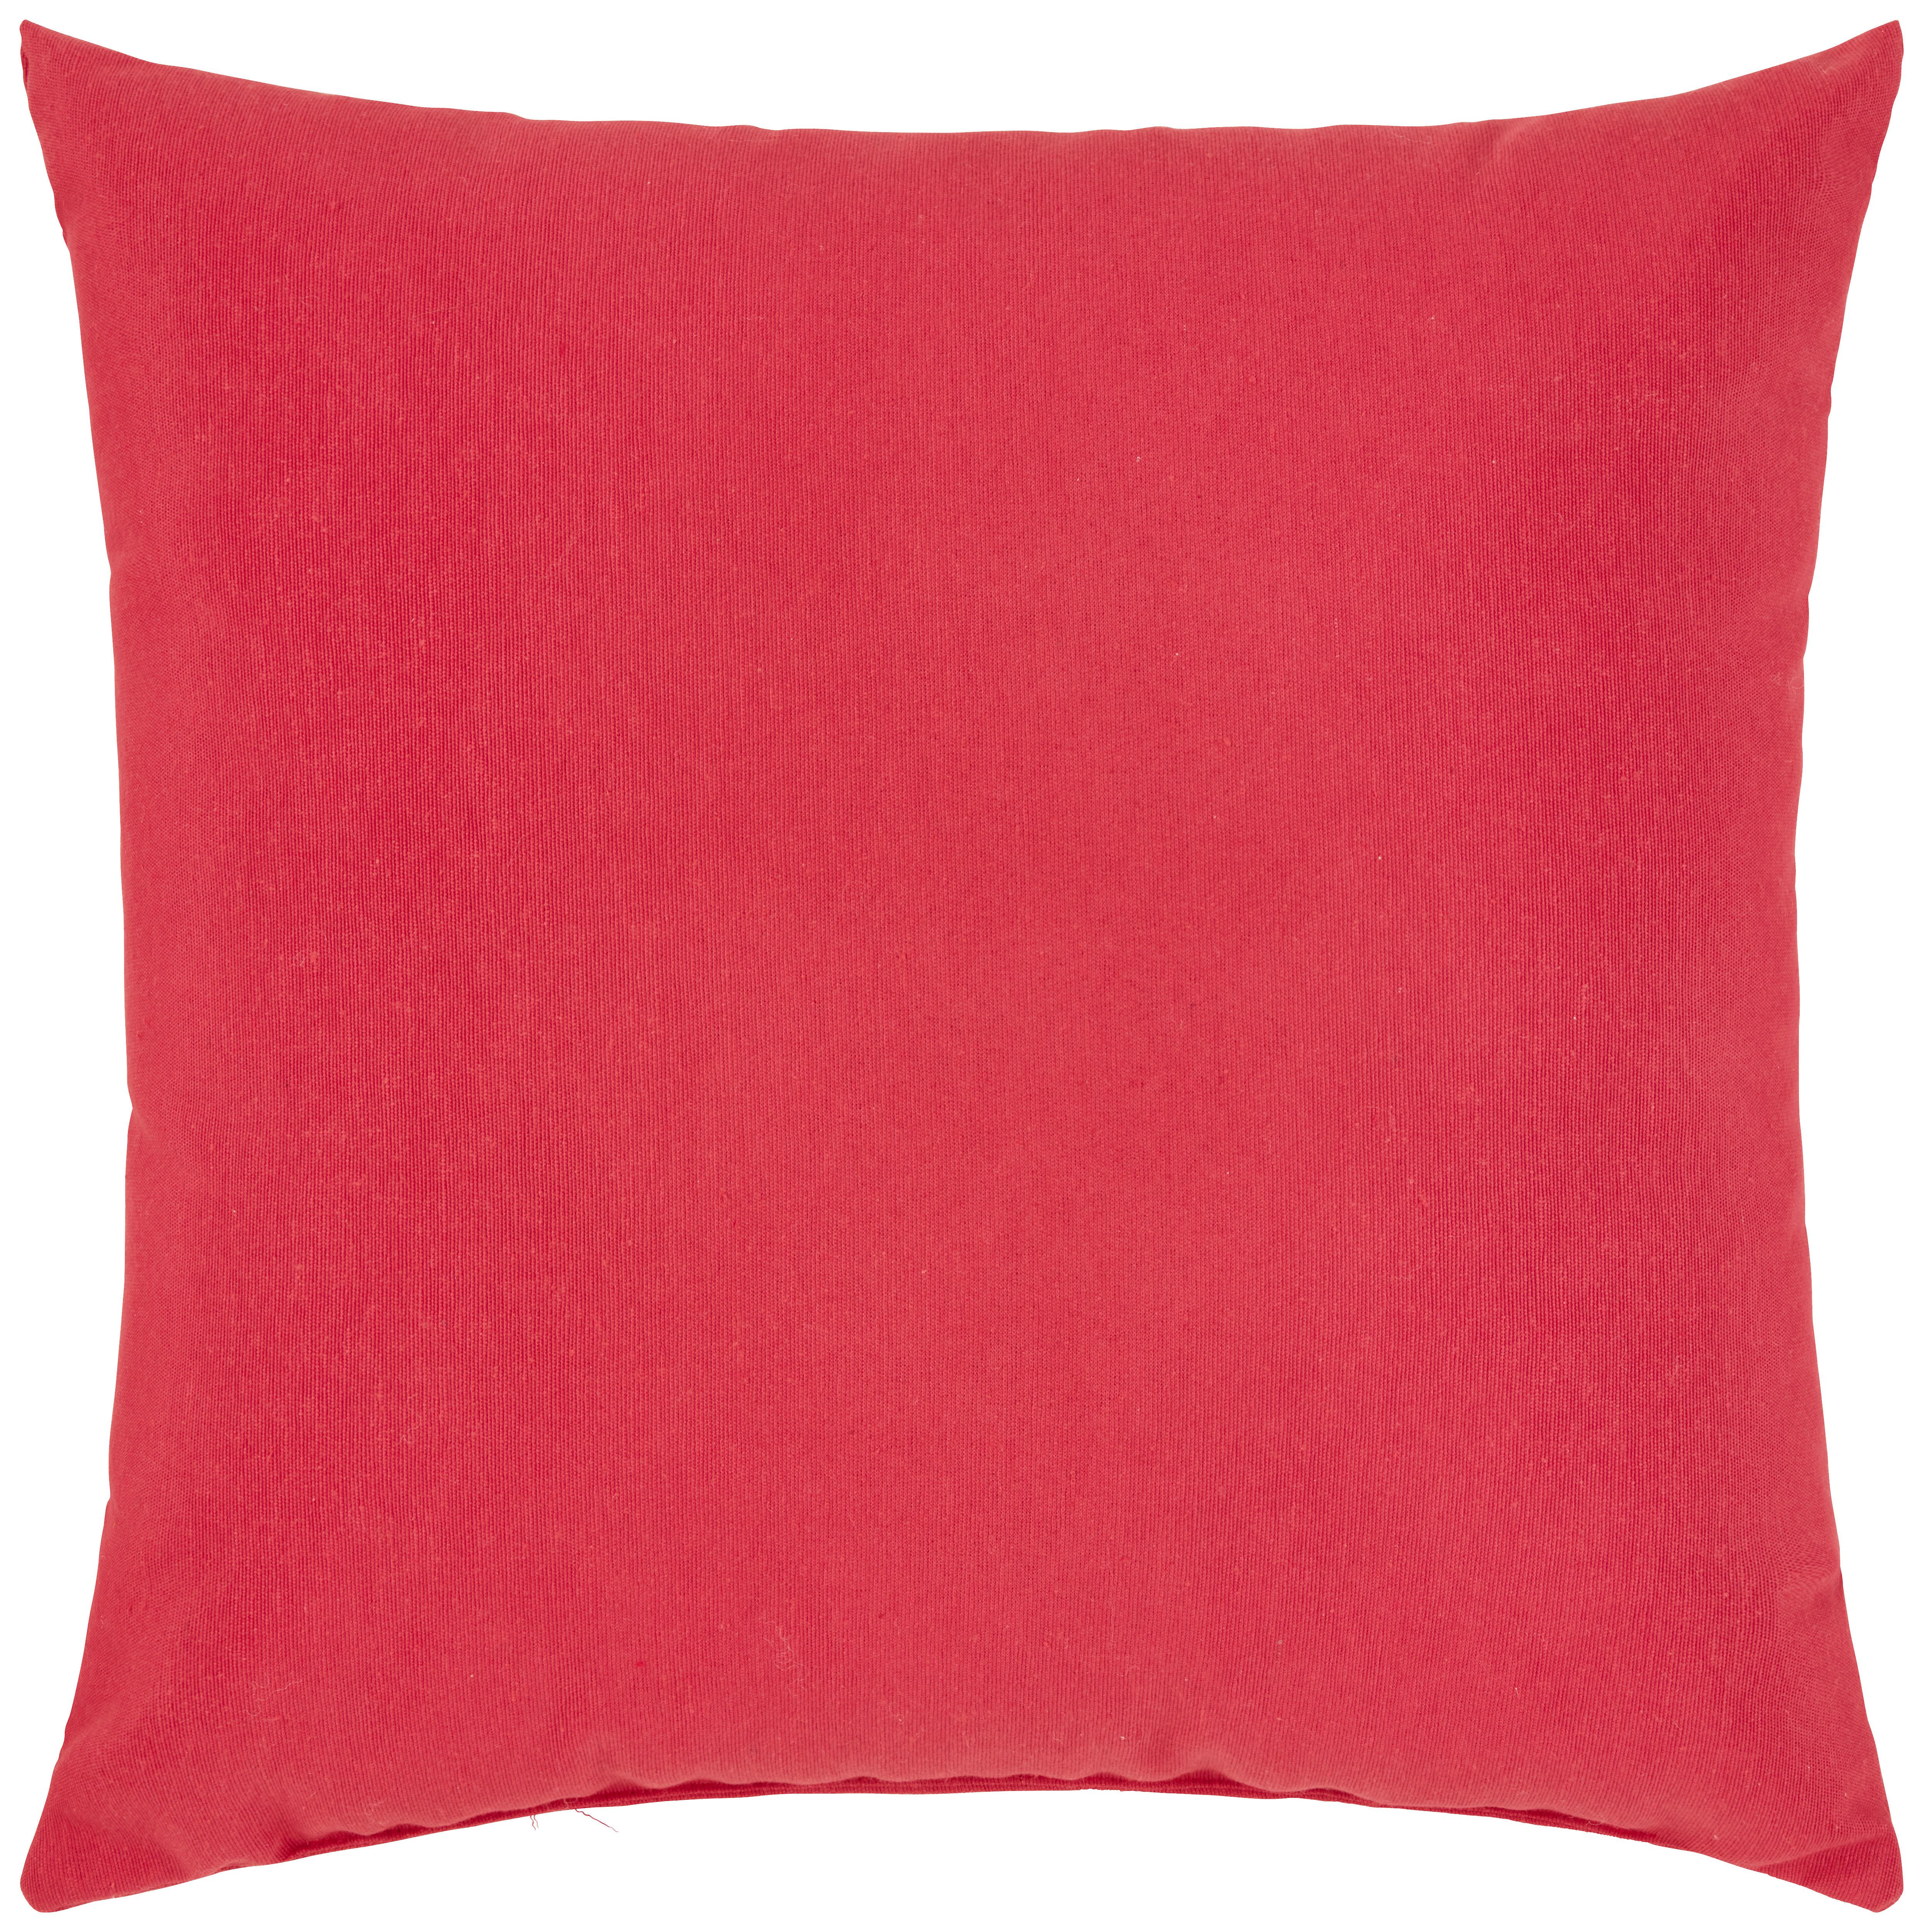 Dekorační Polštář Littlemex, 38/38cm, Červená - červená, Konvenční, textil (38/38cm) - Modern Living